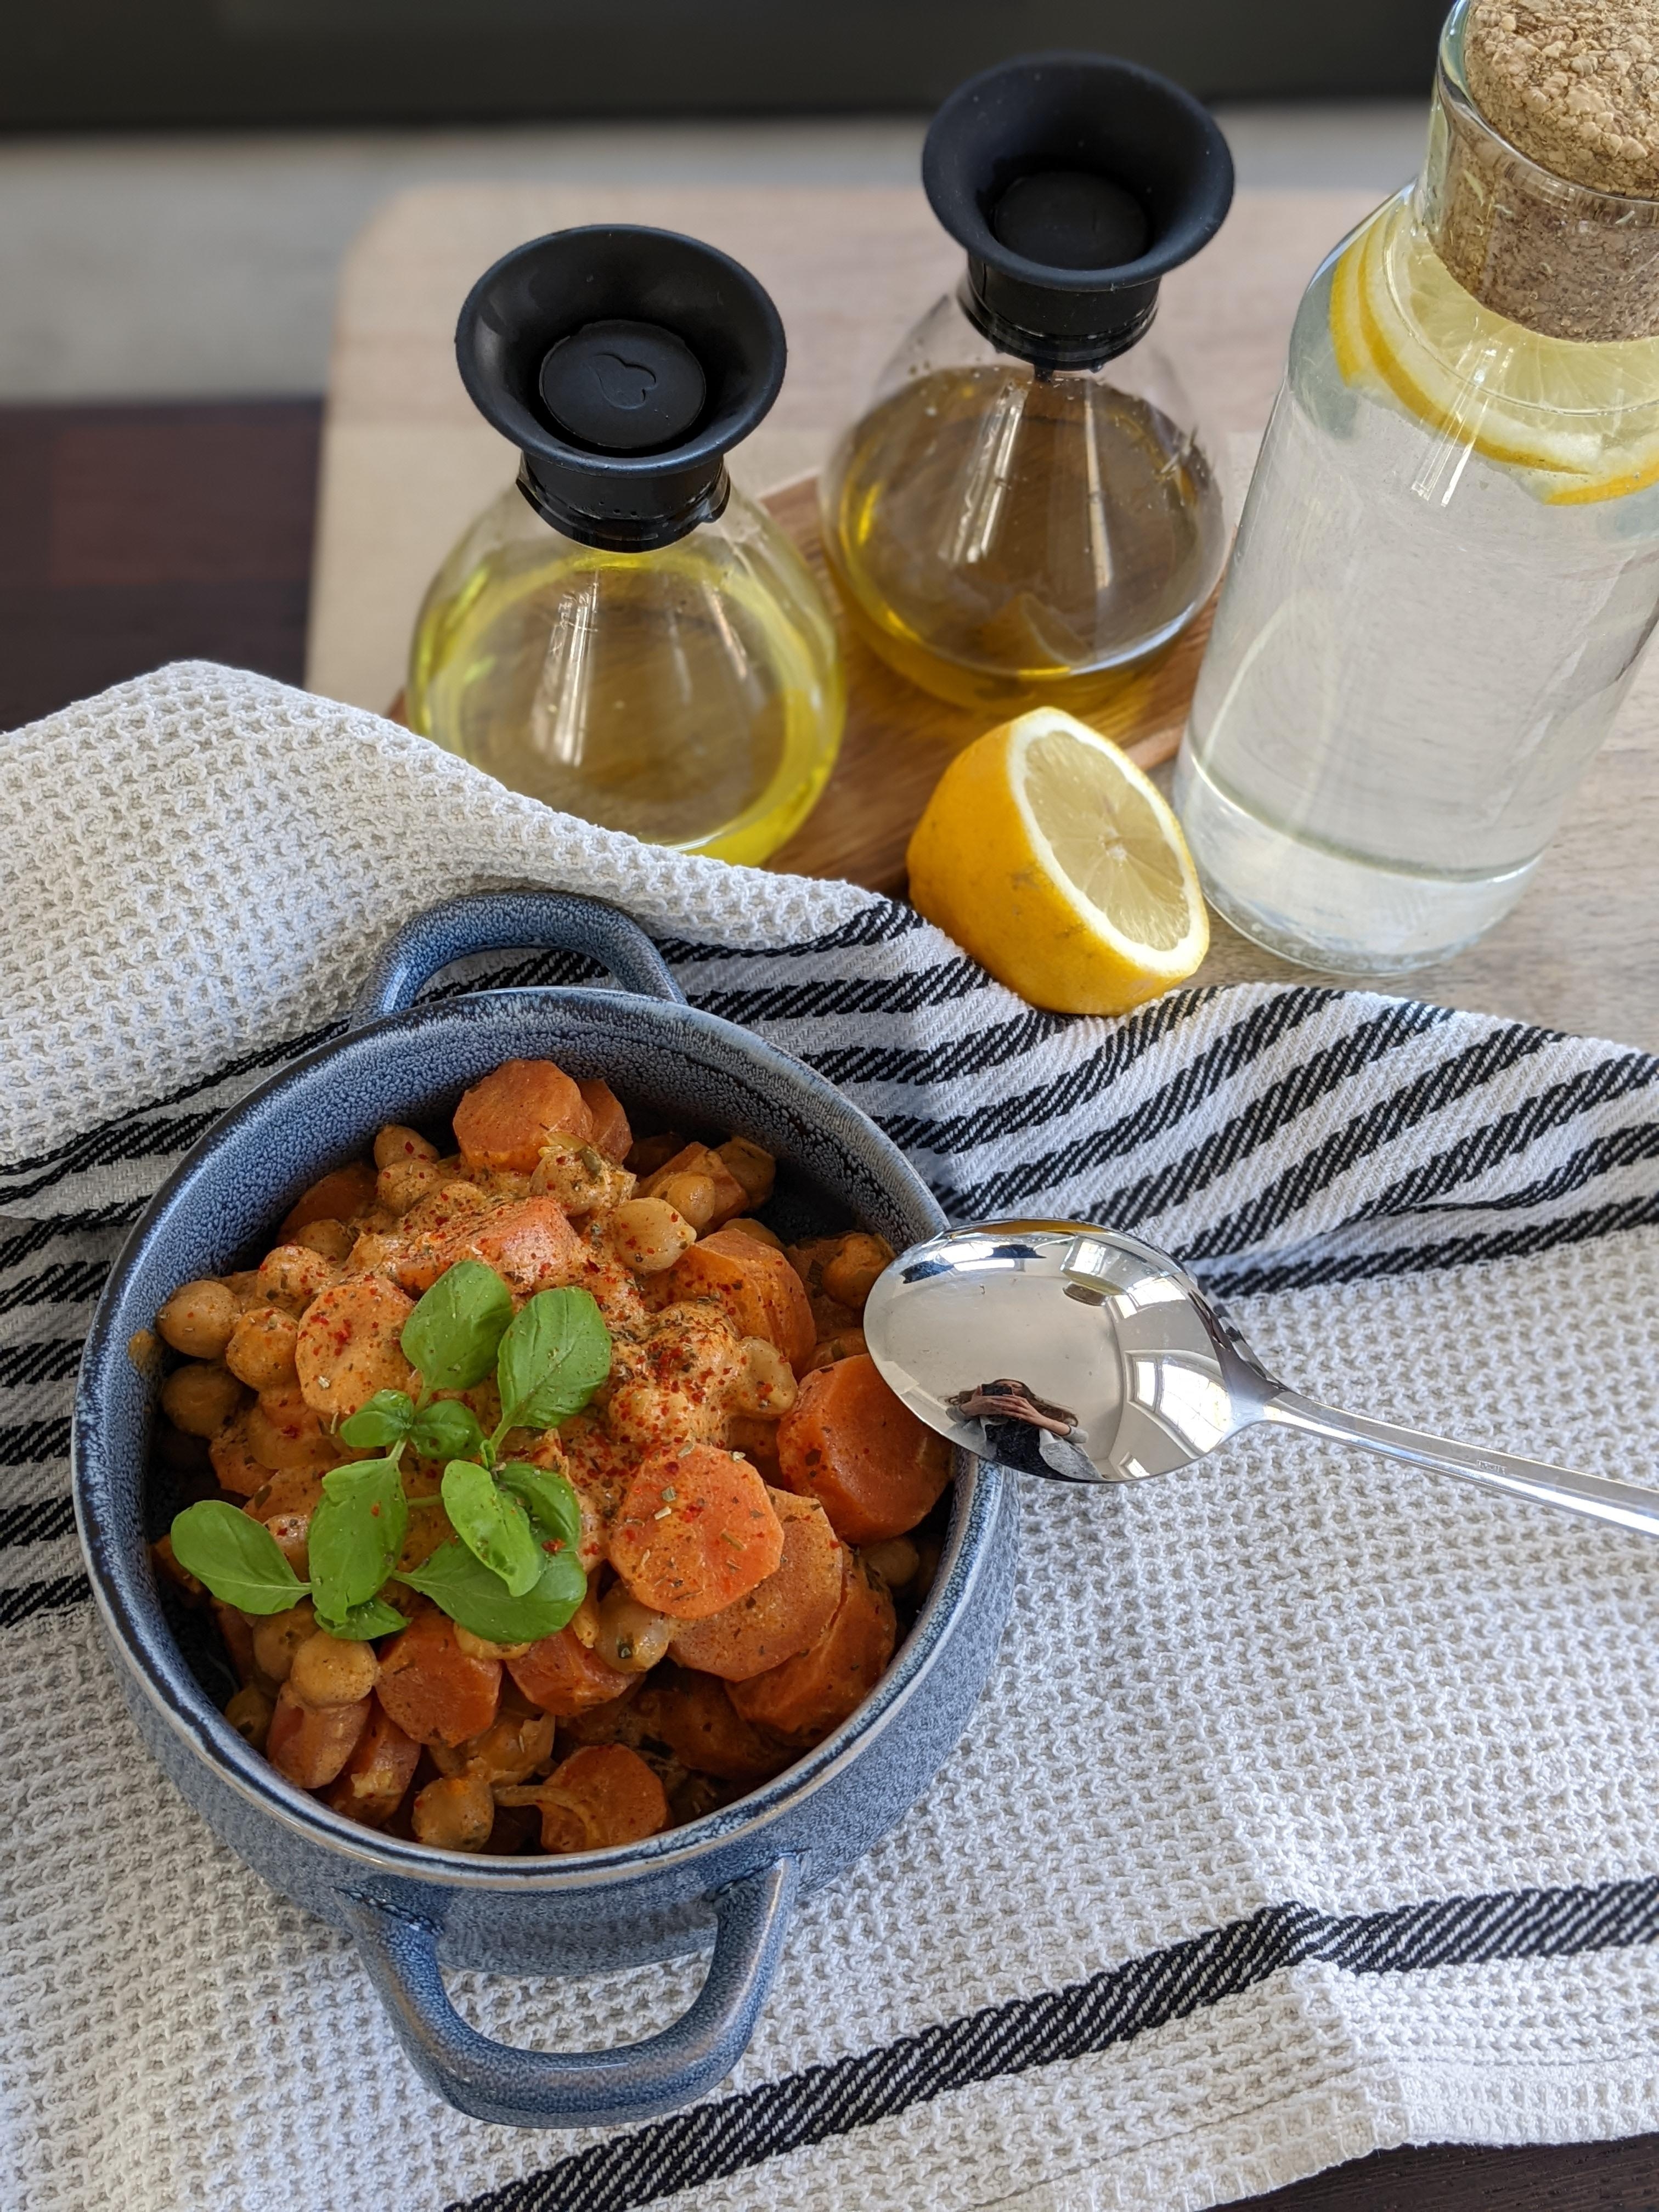 Karotten-Kichererbsen Curry💓
#summerfood